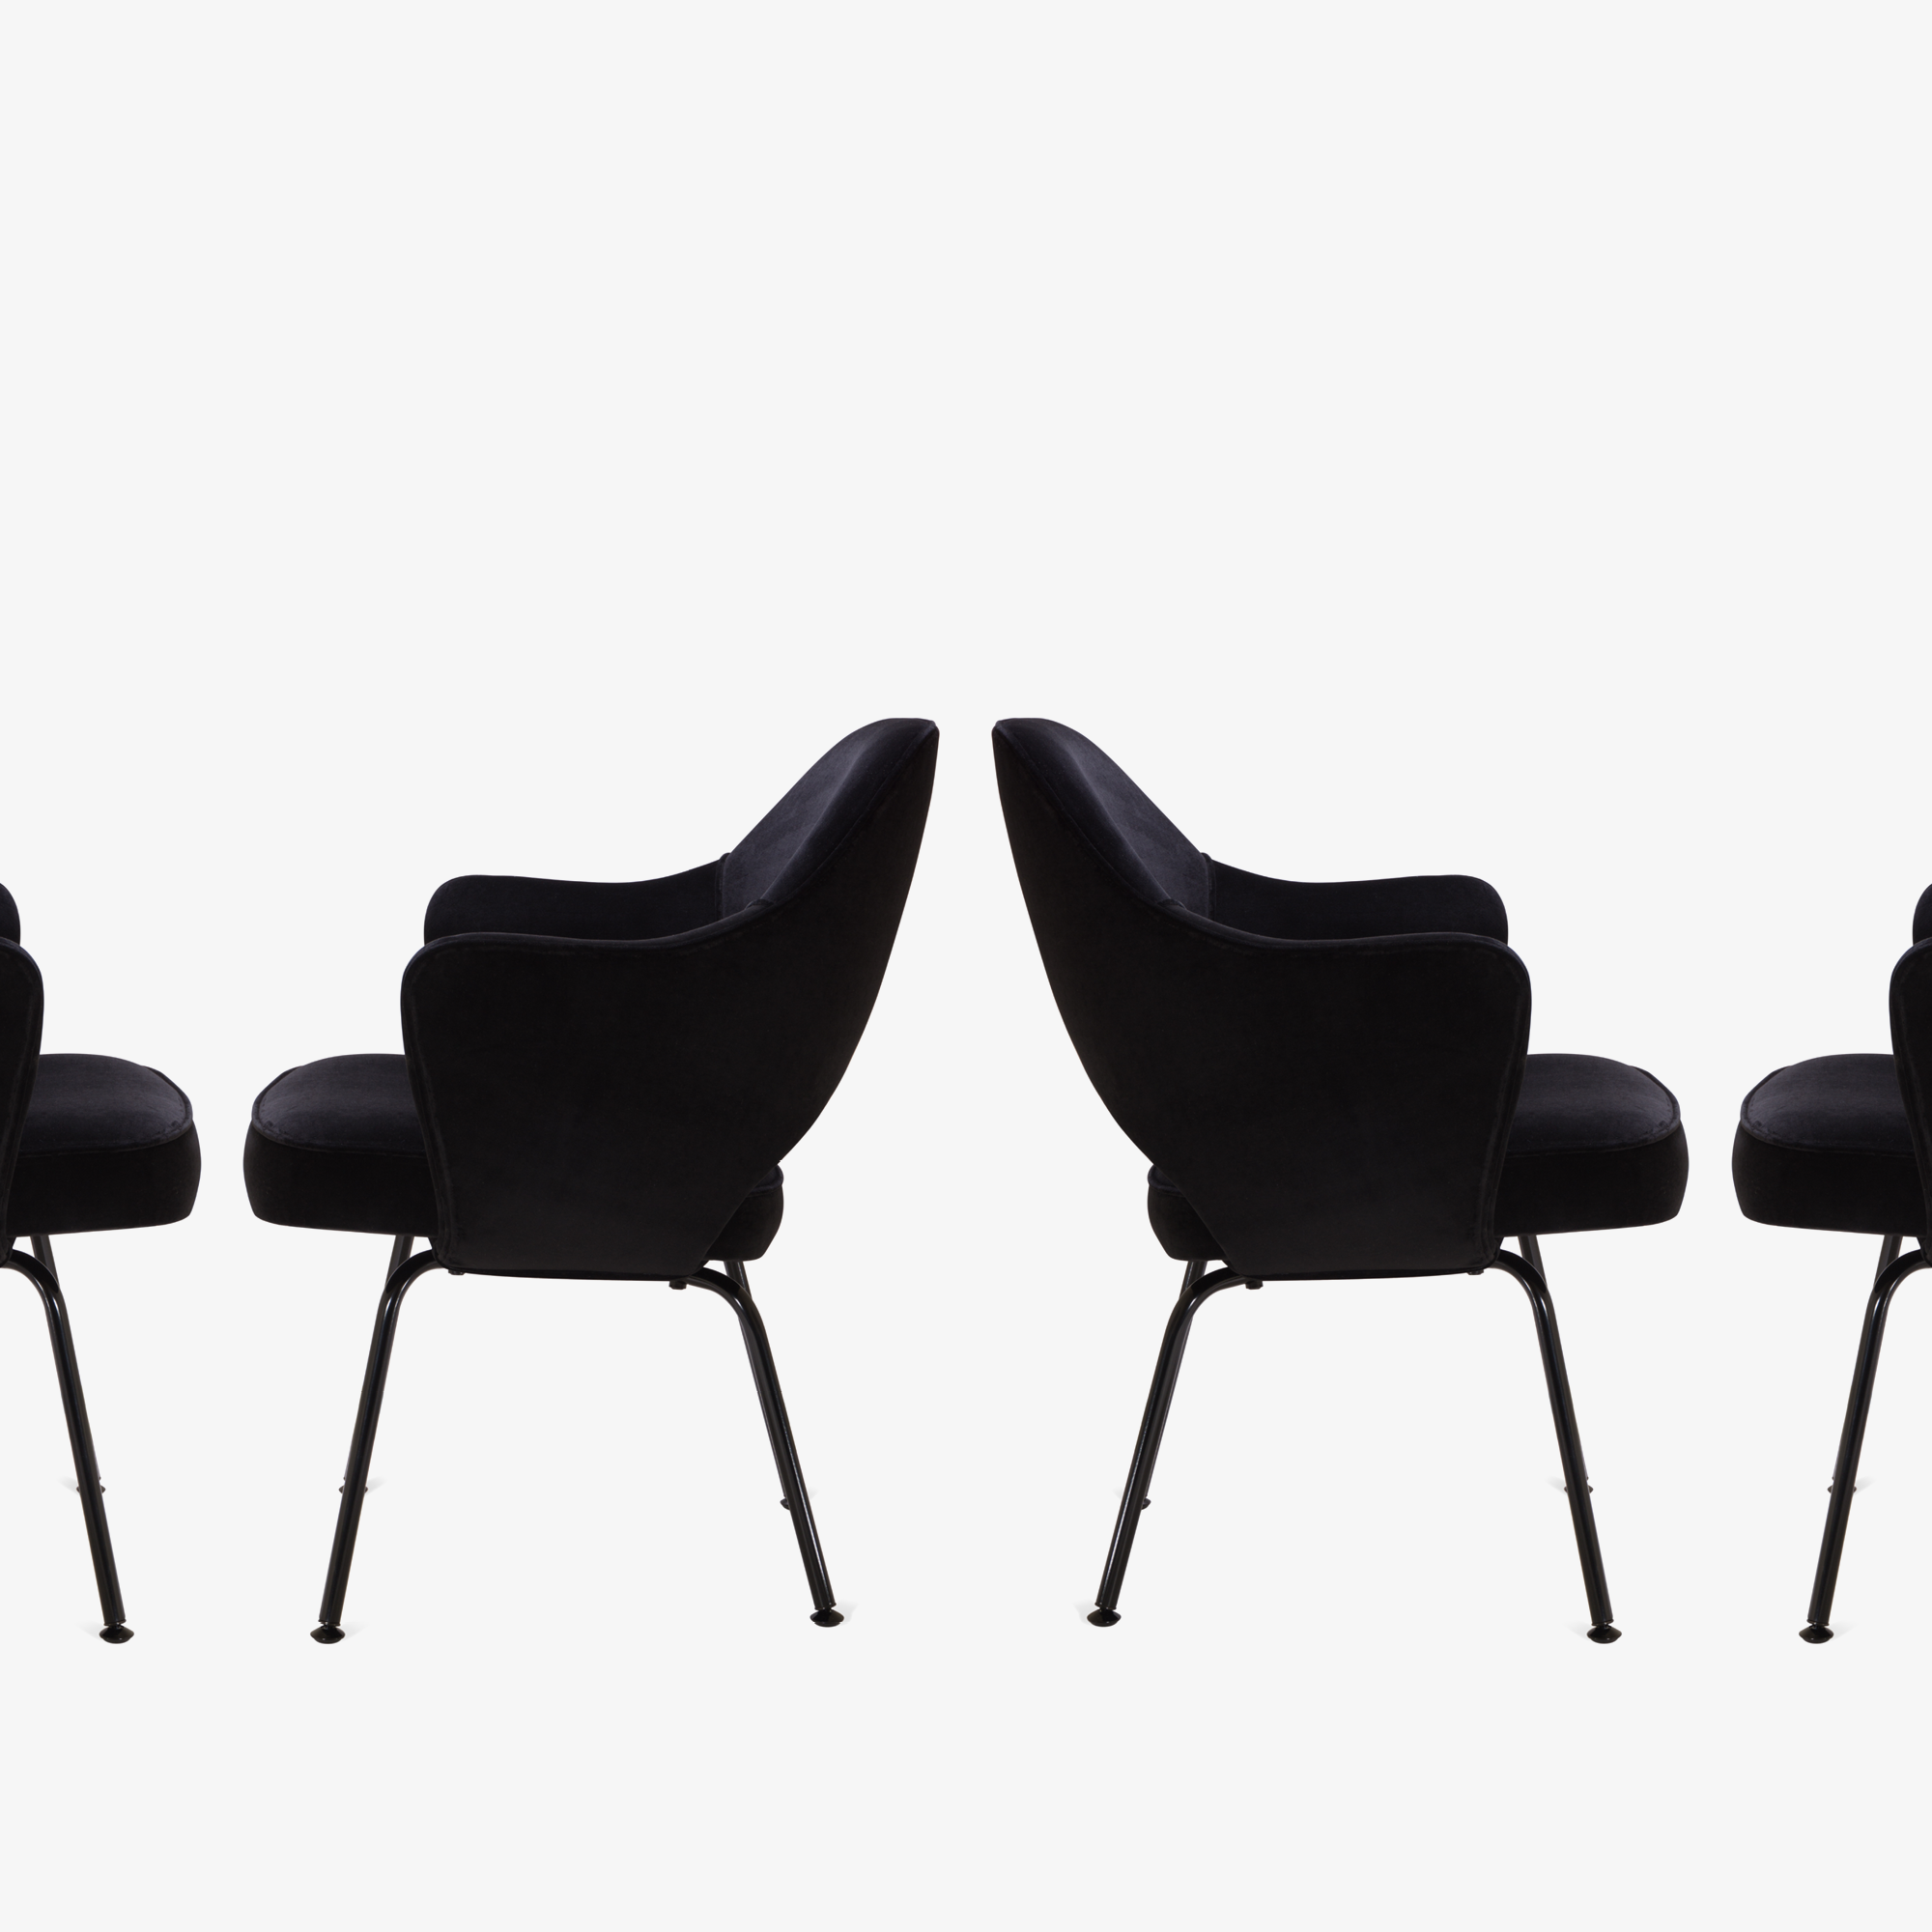 Knoll Saarinen Executive Arm Chair, Black Edition